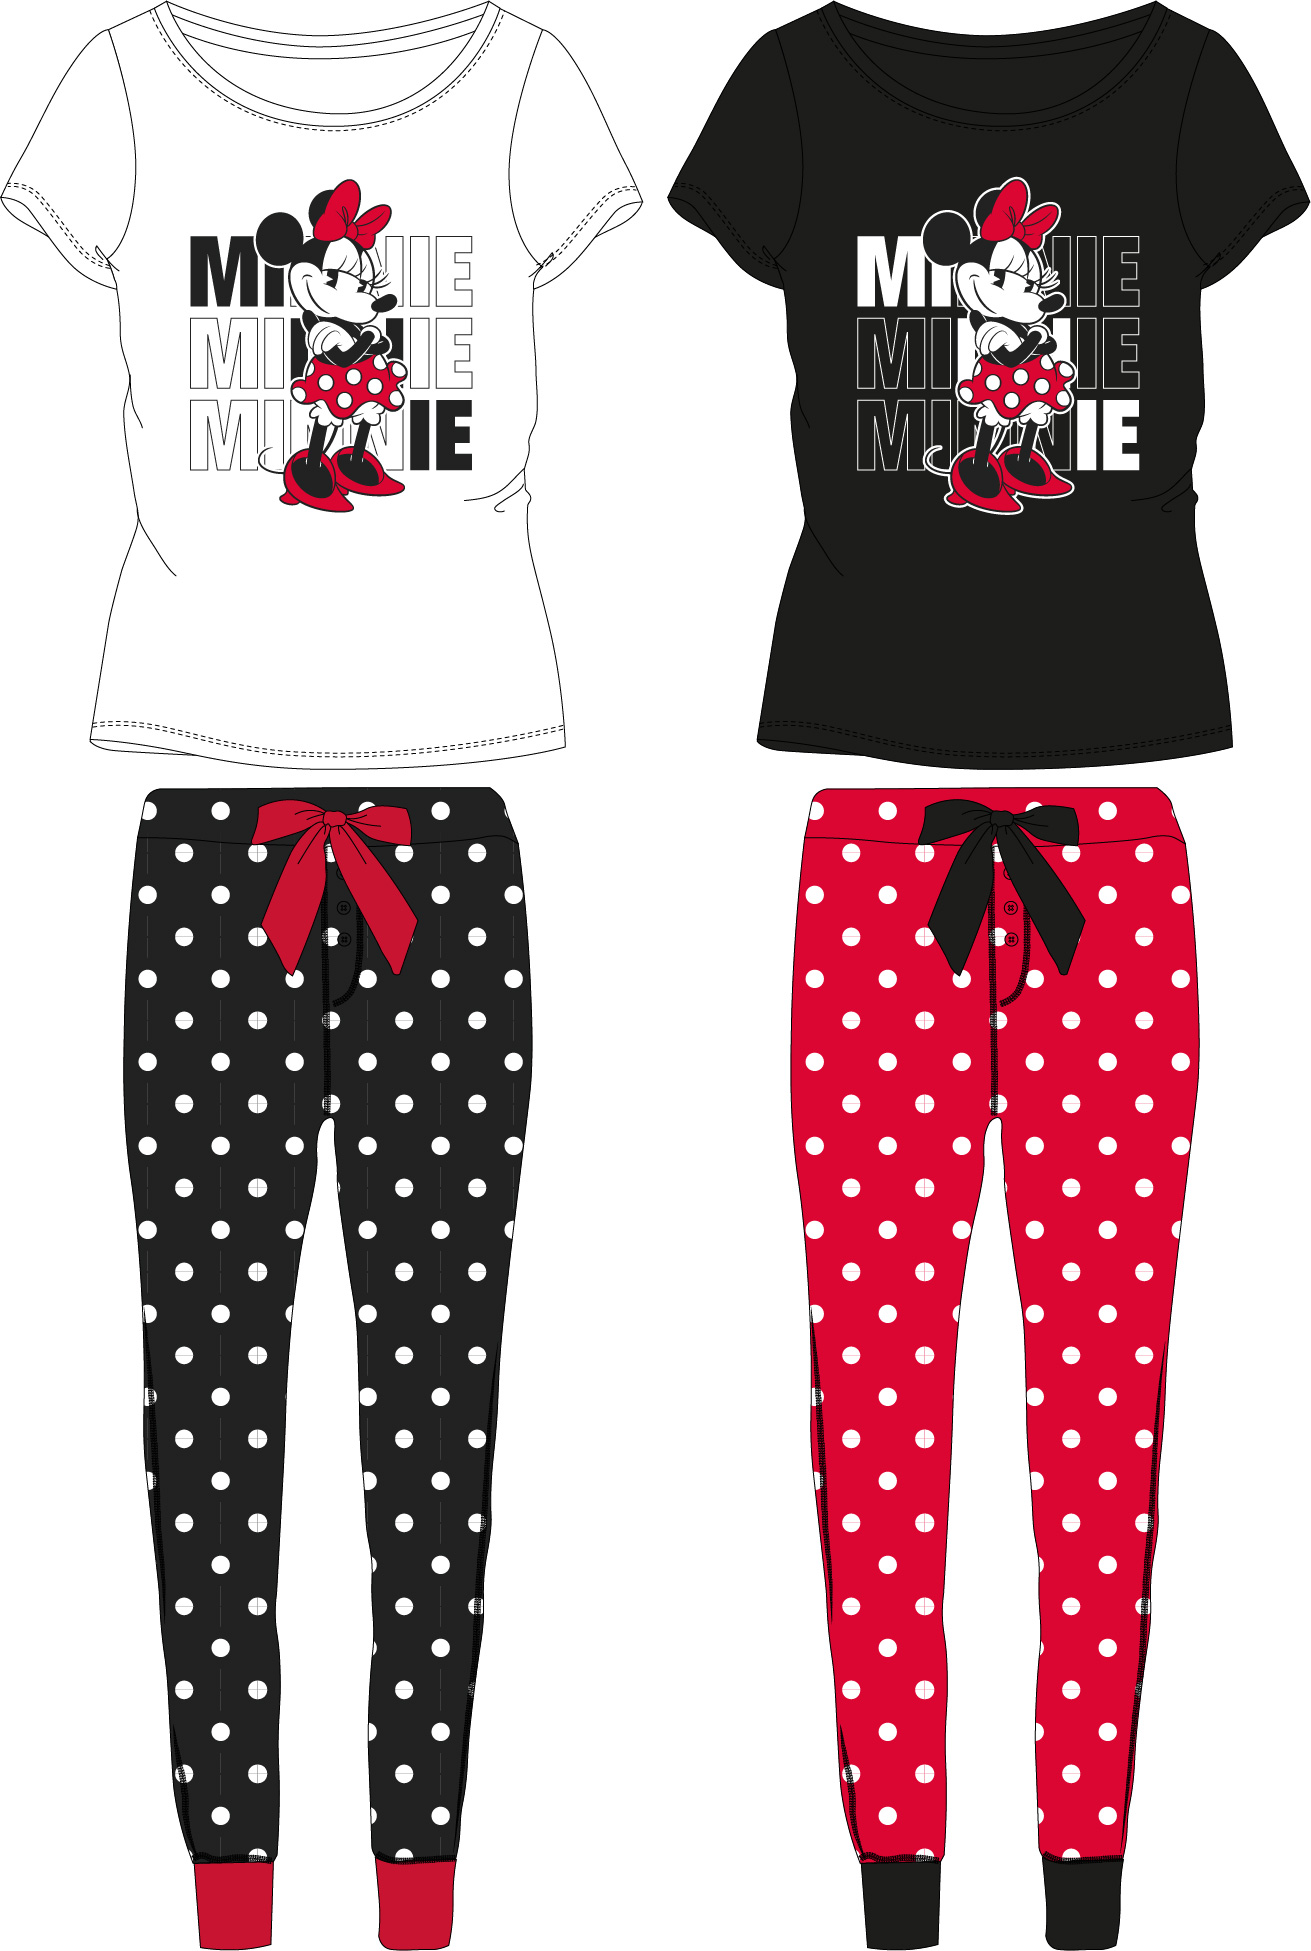 Mickey Mouse - licence Dámské pyžamo - Minnie Mouse 5304A258, bílá / tmavě šedé kalhoty Barva: Bílá, Velikost: S